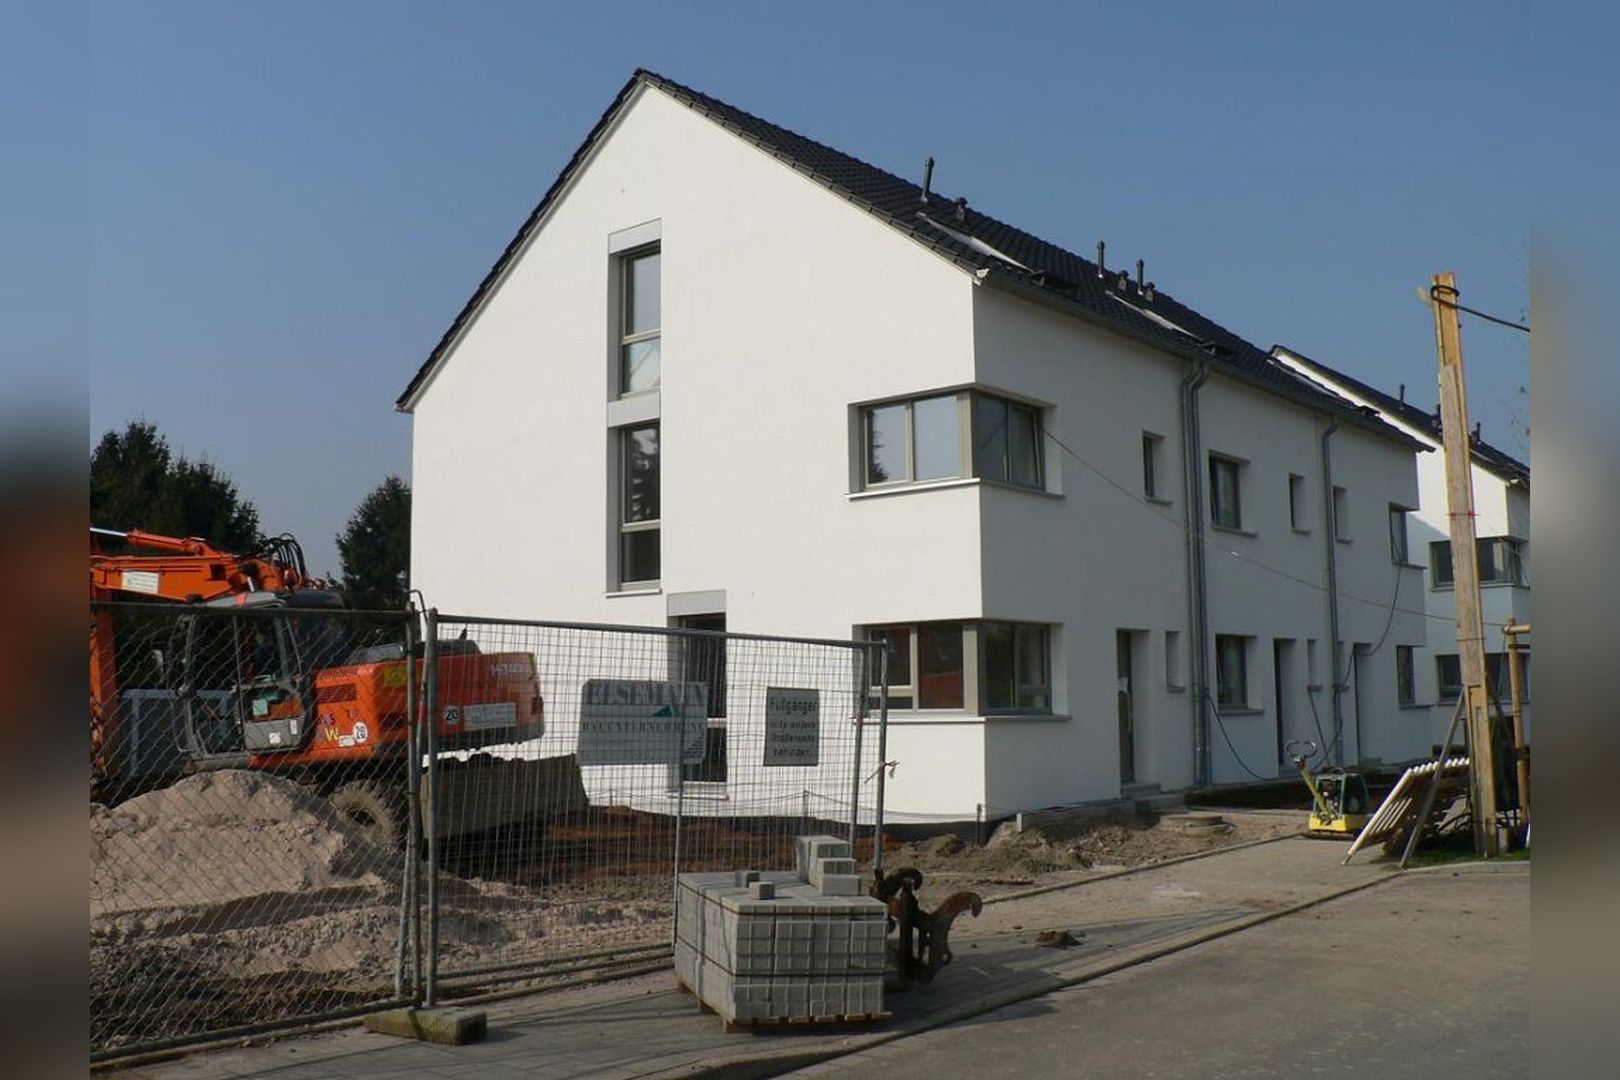 Immobilie Nr.53_58 - evohaus nach EnEV 2009  - Bild 17.jpg